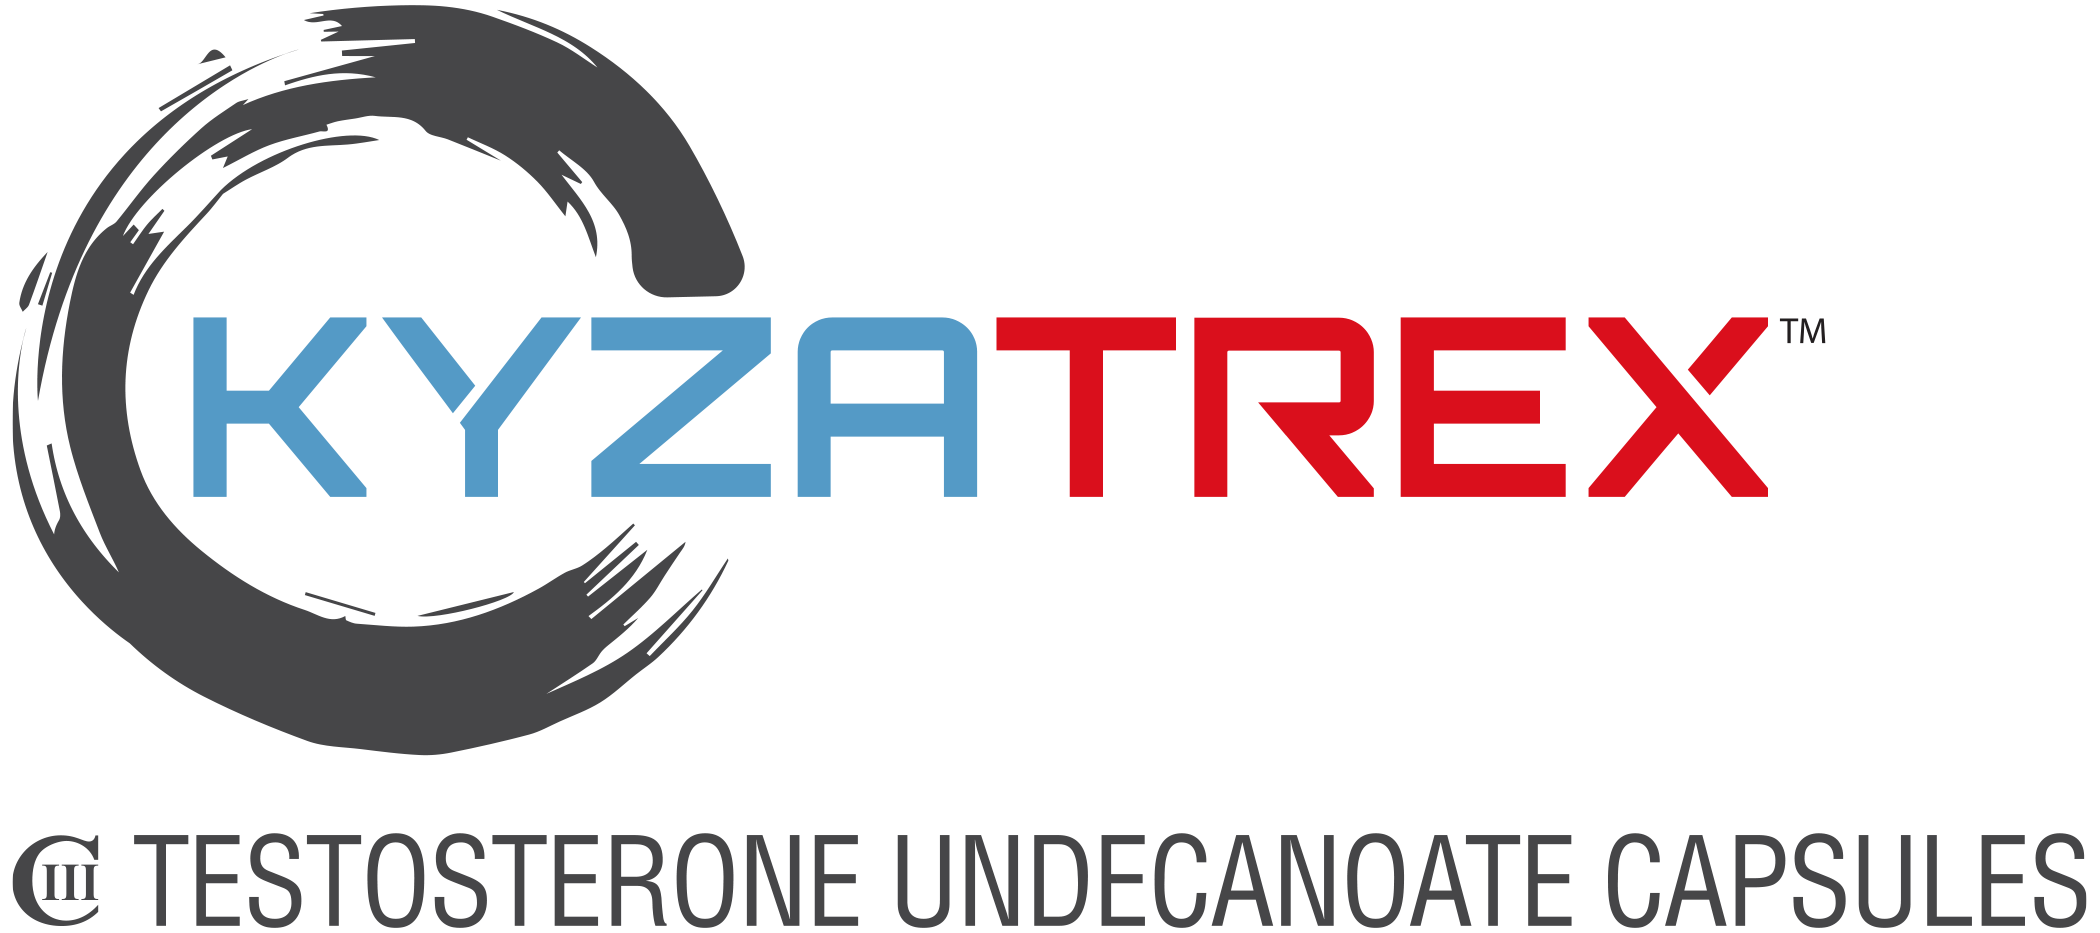 Kyzatrex logo